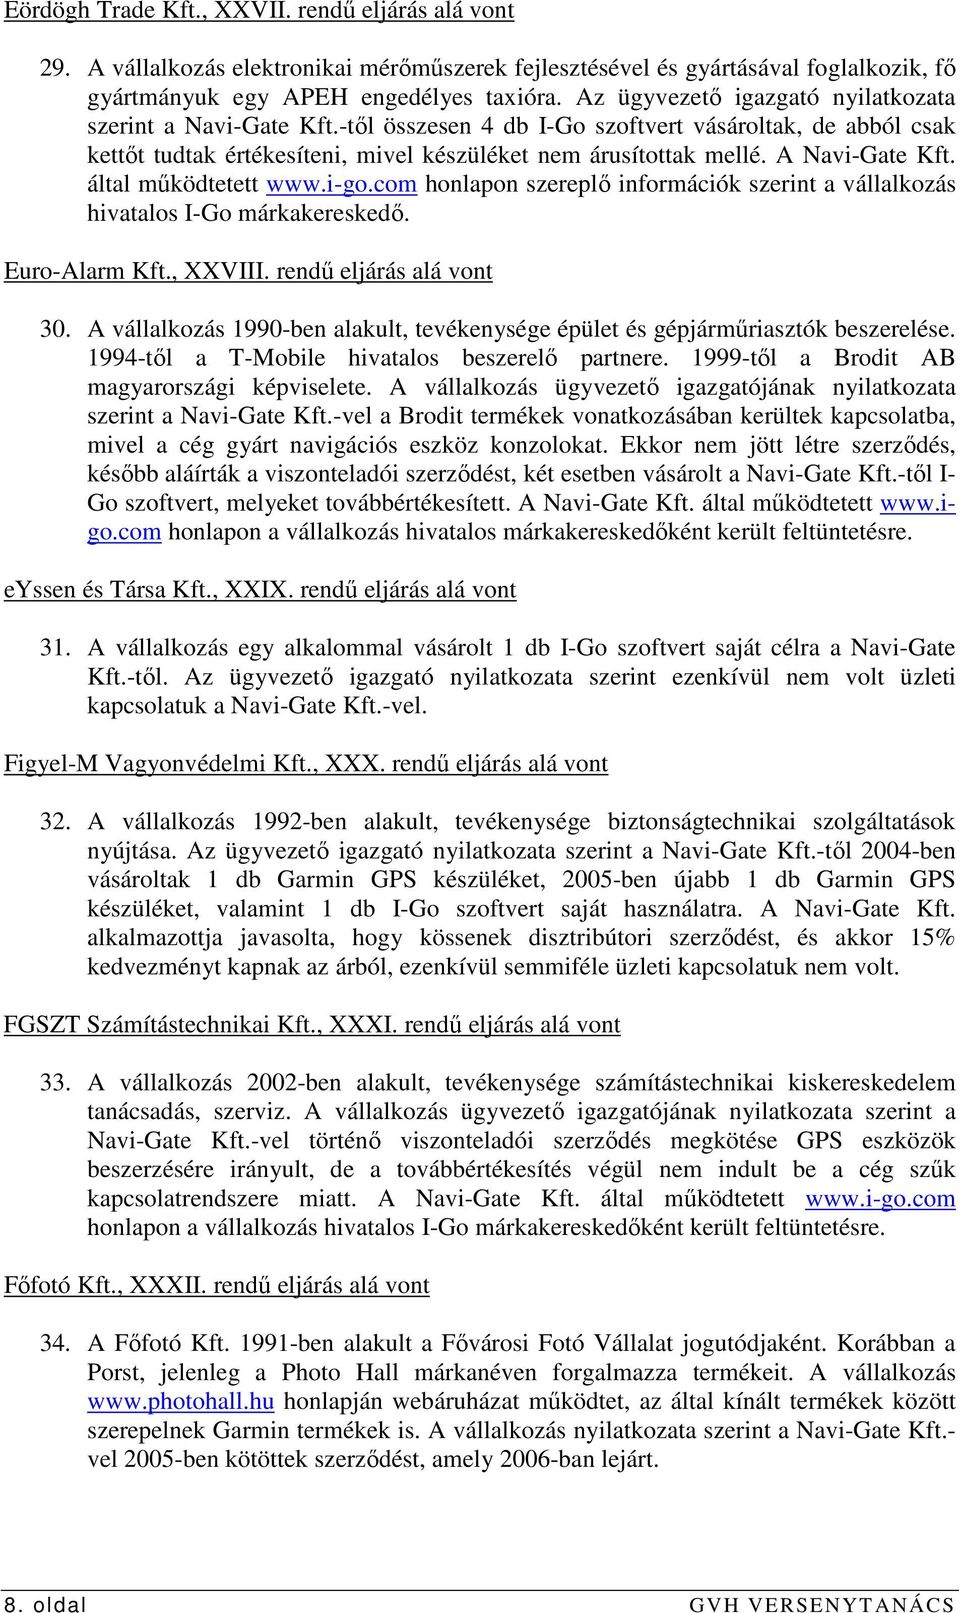 A Navi-Gate Kft. által mőködtetett www.i-go.com honlapon szereplı információk szerint a vállalkozás hivatalos I-Go márkakereskedı. Euro-Alarm Kft., XXVIII. rendő eljárás alá vont 30.